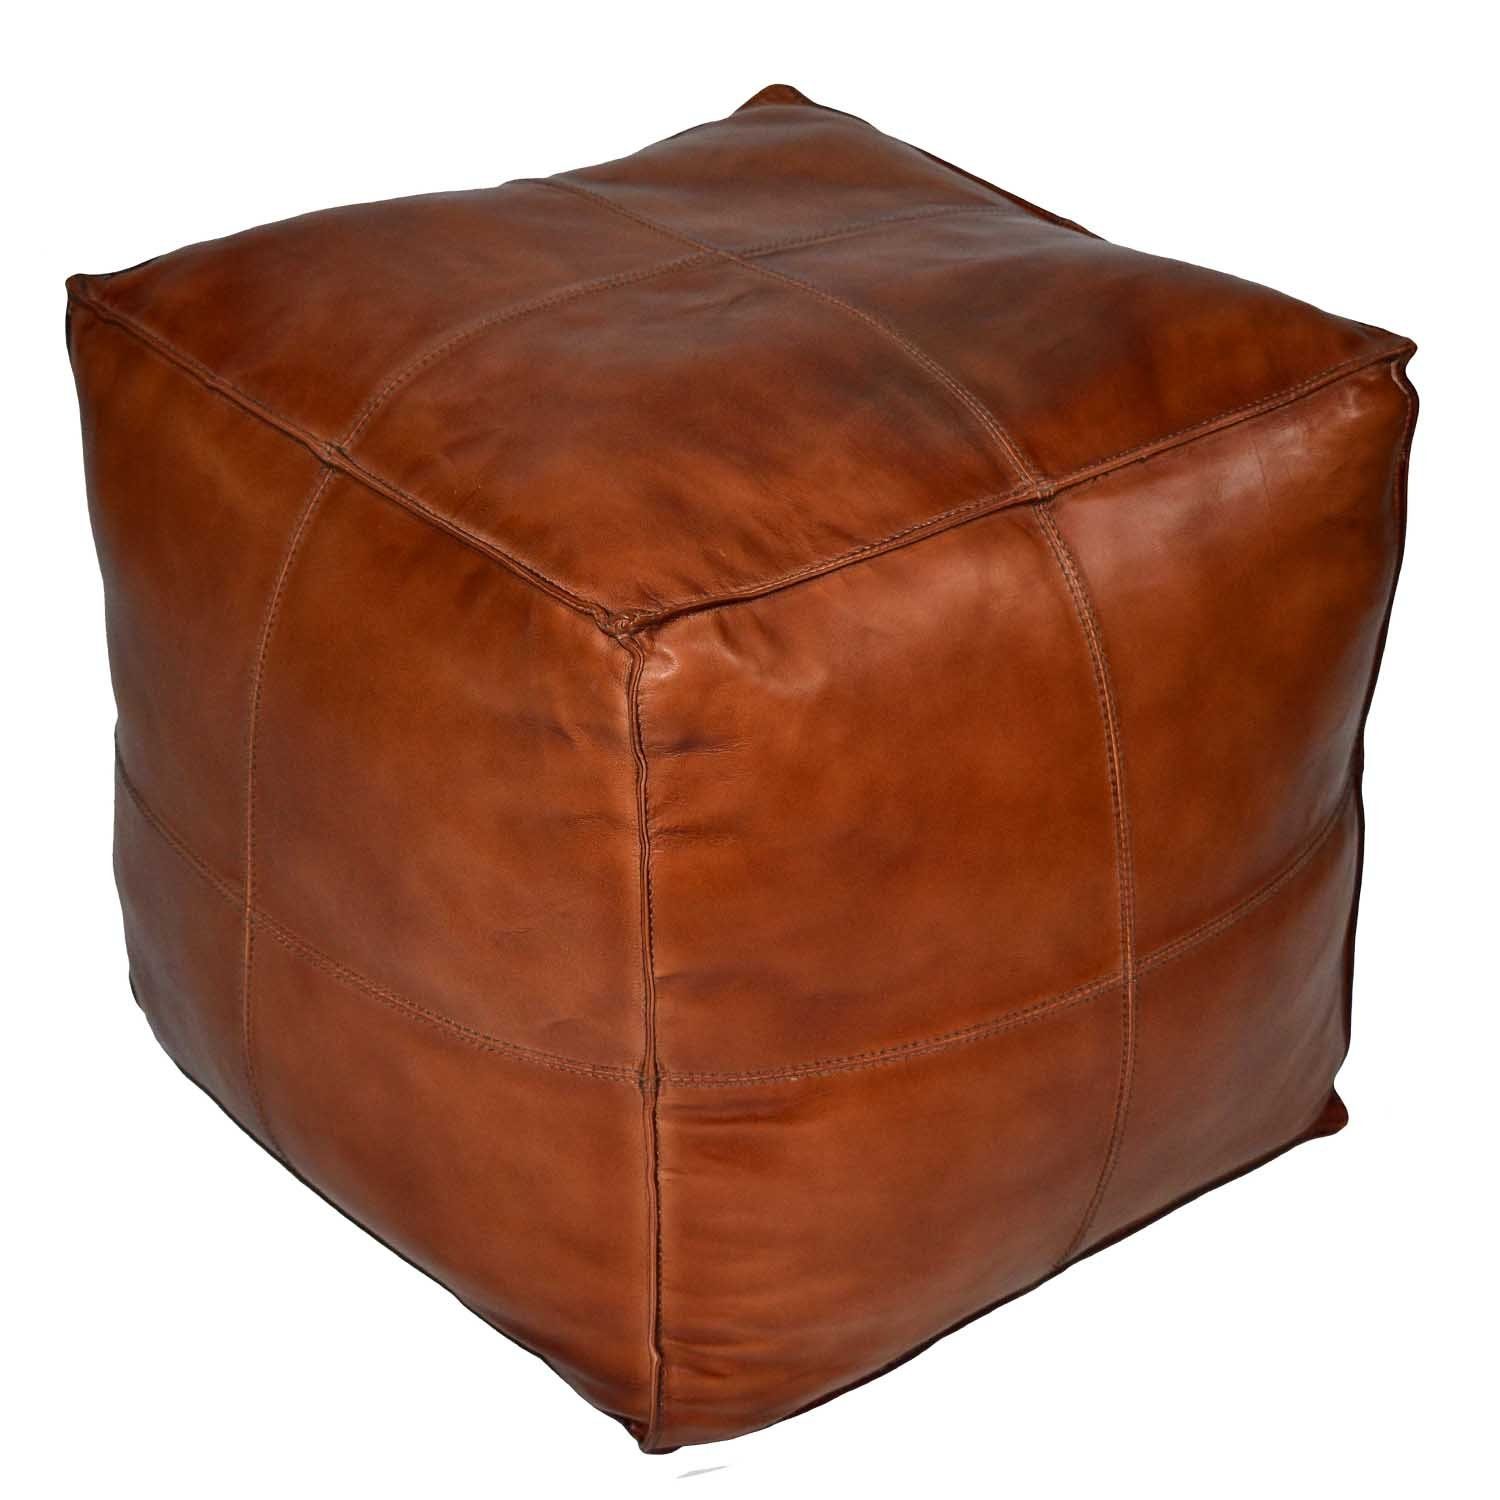 Casa Moro Pouf »Orientalisches Leder-Sitzkissen Pouf Sunyata braun mit  Füllung 50x50x45 cm (Breite/Tiefe/Höhe) Echt-Leder Sitz-Hocker quadratisch,  ein Polsterhocker für einfach schöner Wohnen, HH2813« online kaufen | OTTO